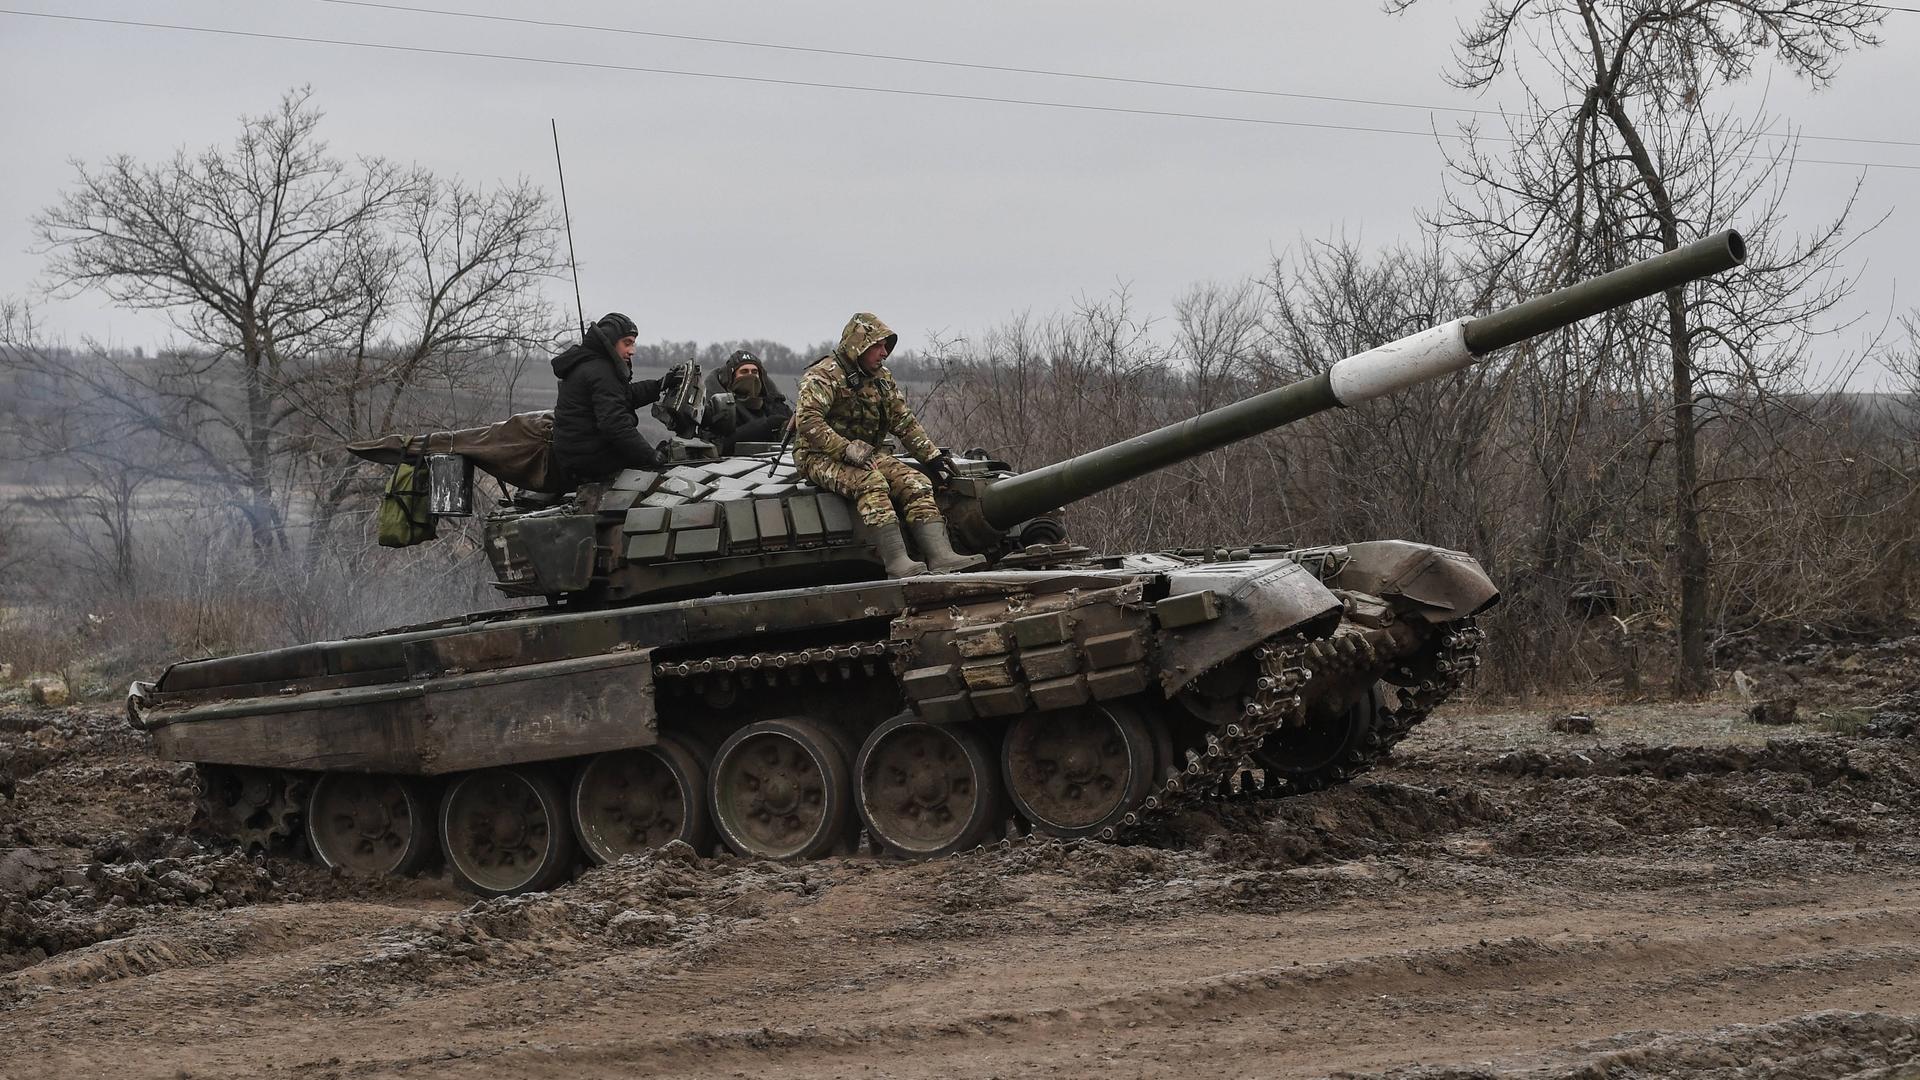 Ein Panzer auf dem russische Soldaten fahren.